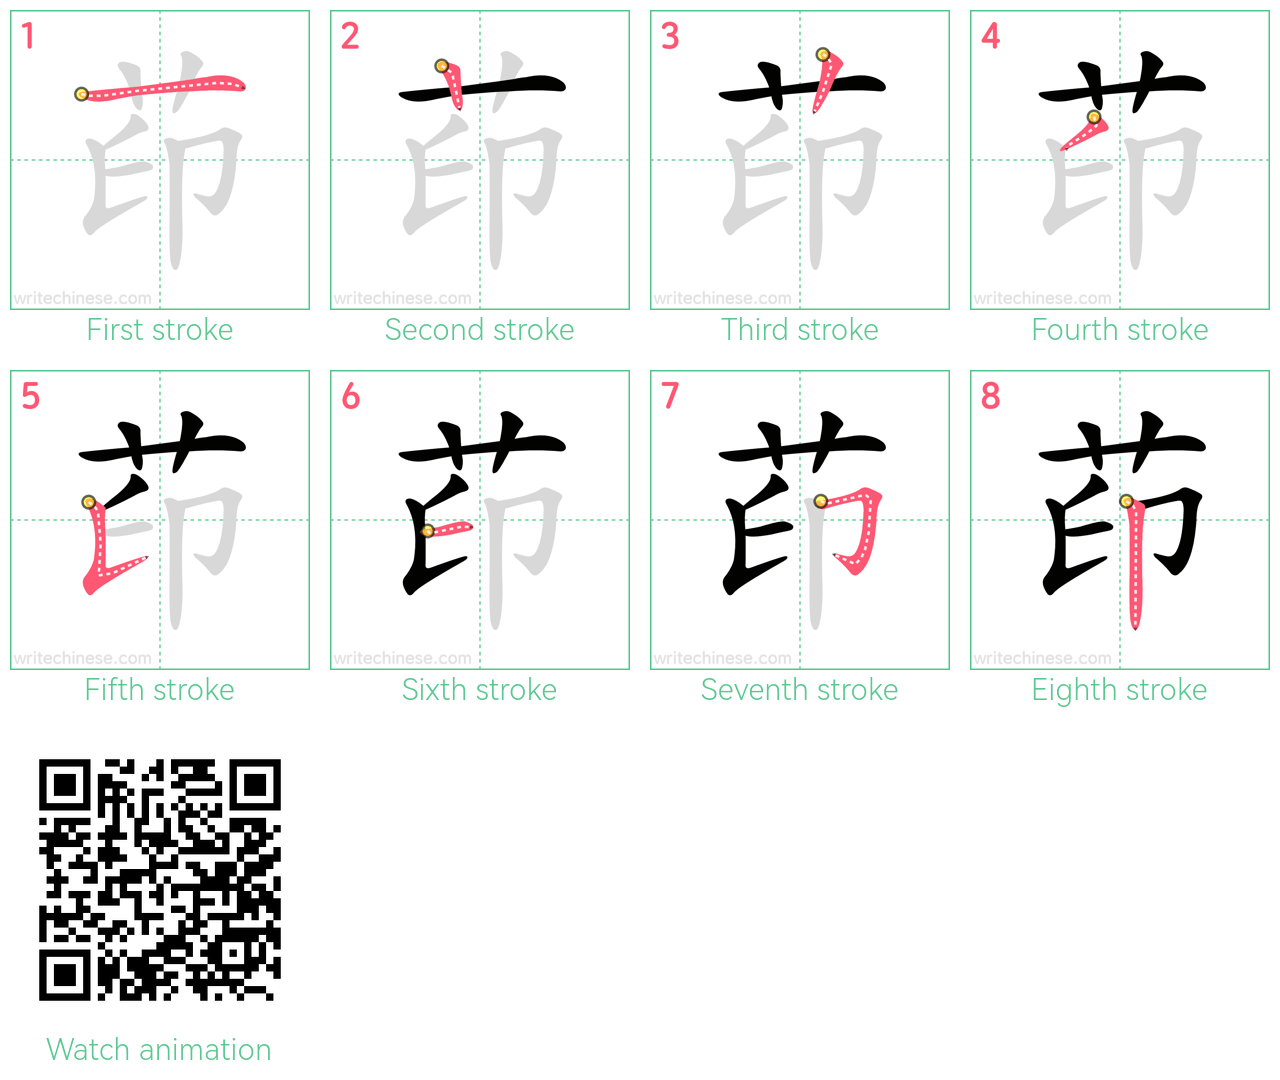 茚 step-by-step stroke order diagrams